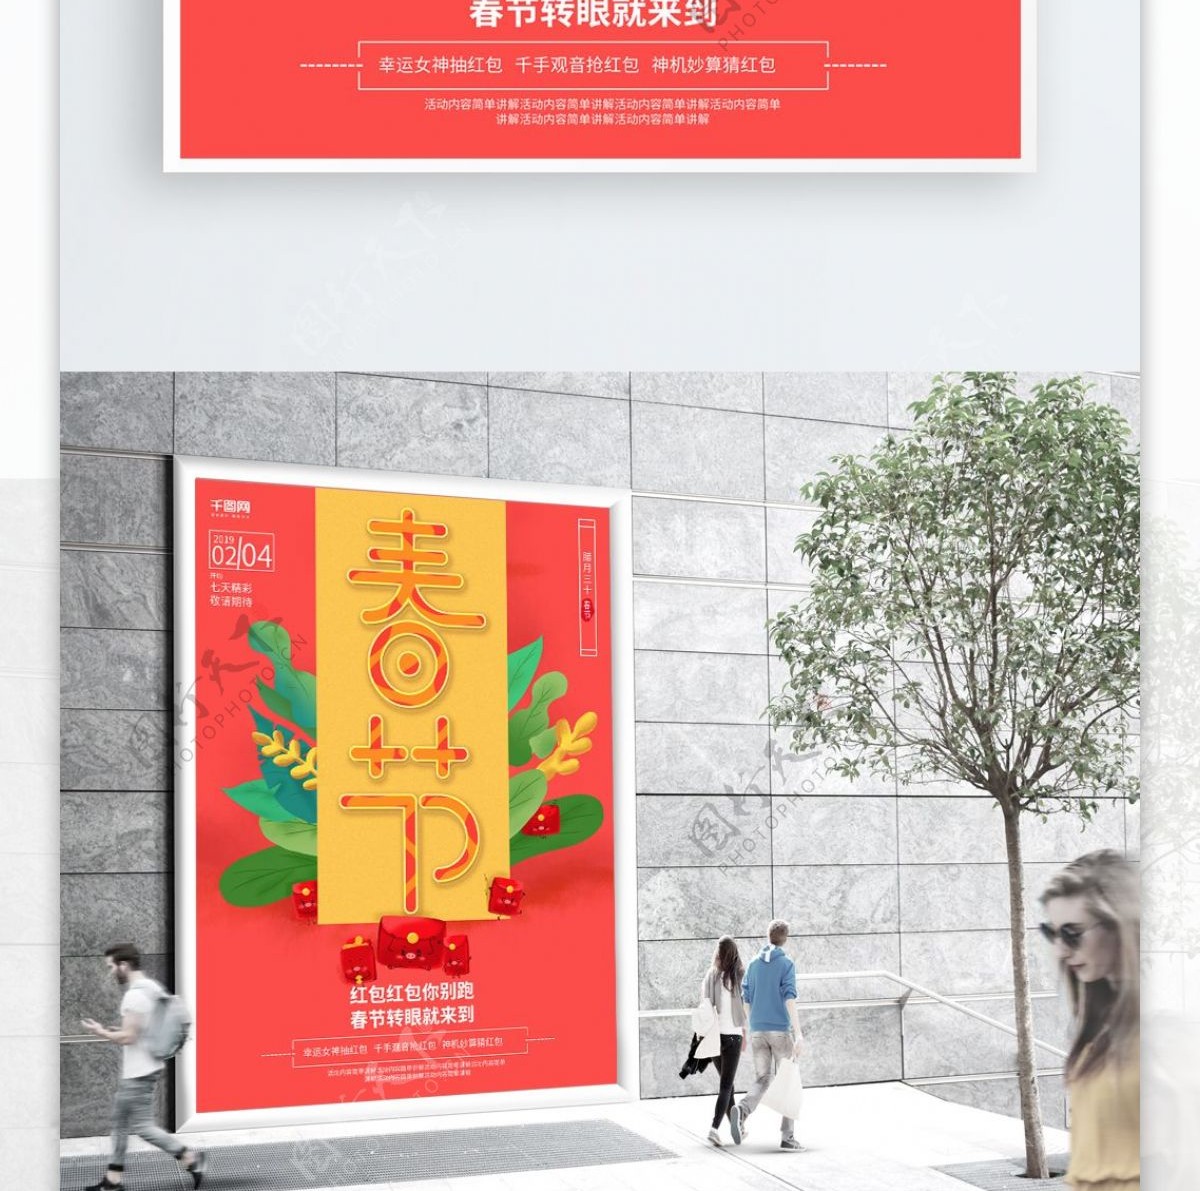 春节红包活动精品主题海报